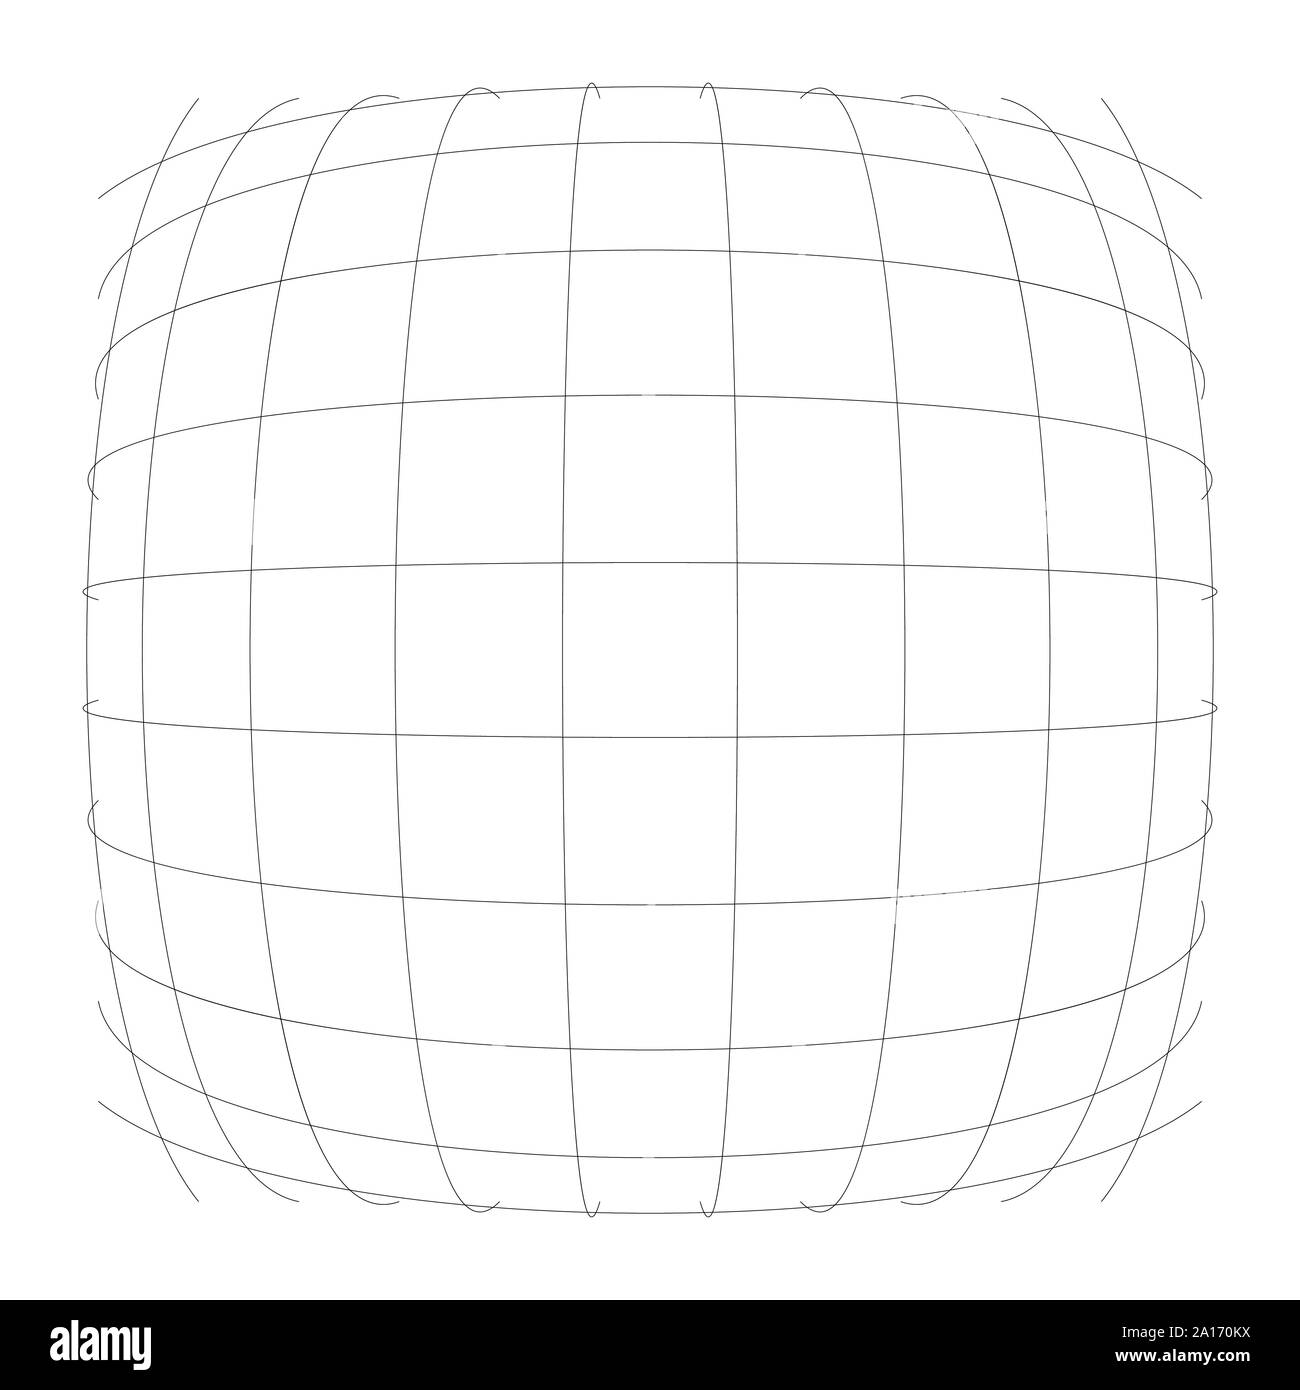 3D sferica convessa, Globe, orb sporgono distorsione e deformazione su linee griglia, mesh. Il rigonfiamento, rigonfiamento, gonfiare sfera. Lampadina, urtare o un rigonfiamento del filo di effetto-fr Illustrazione Vettoriale